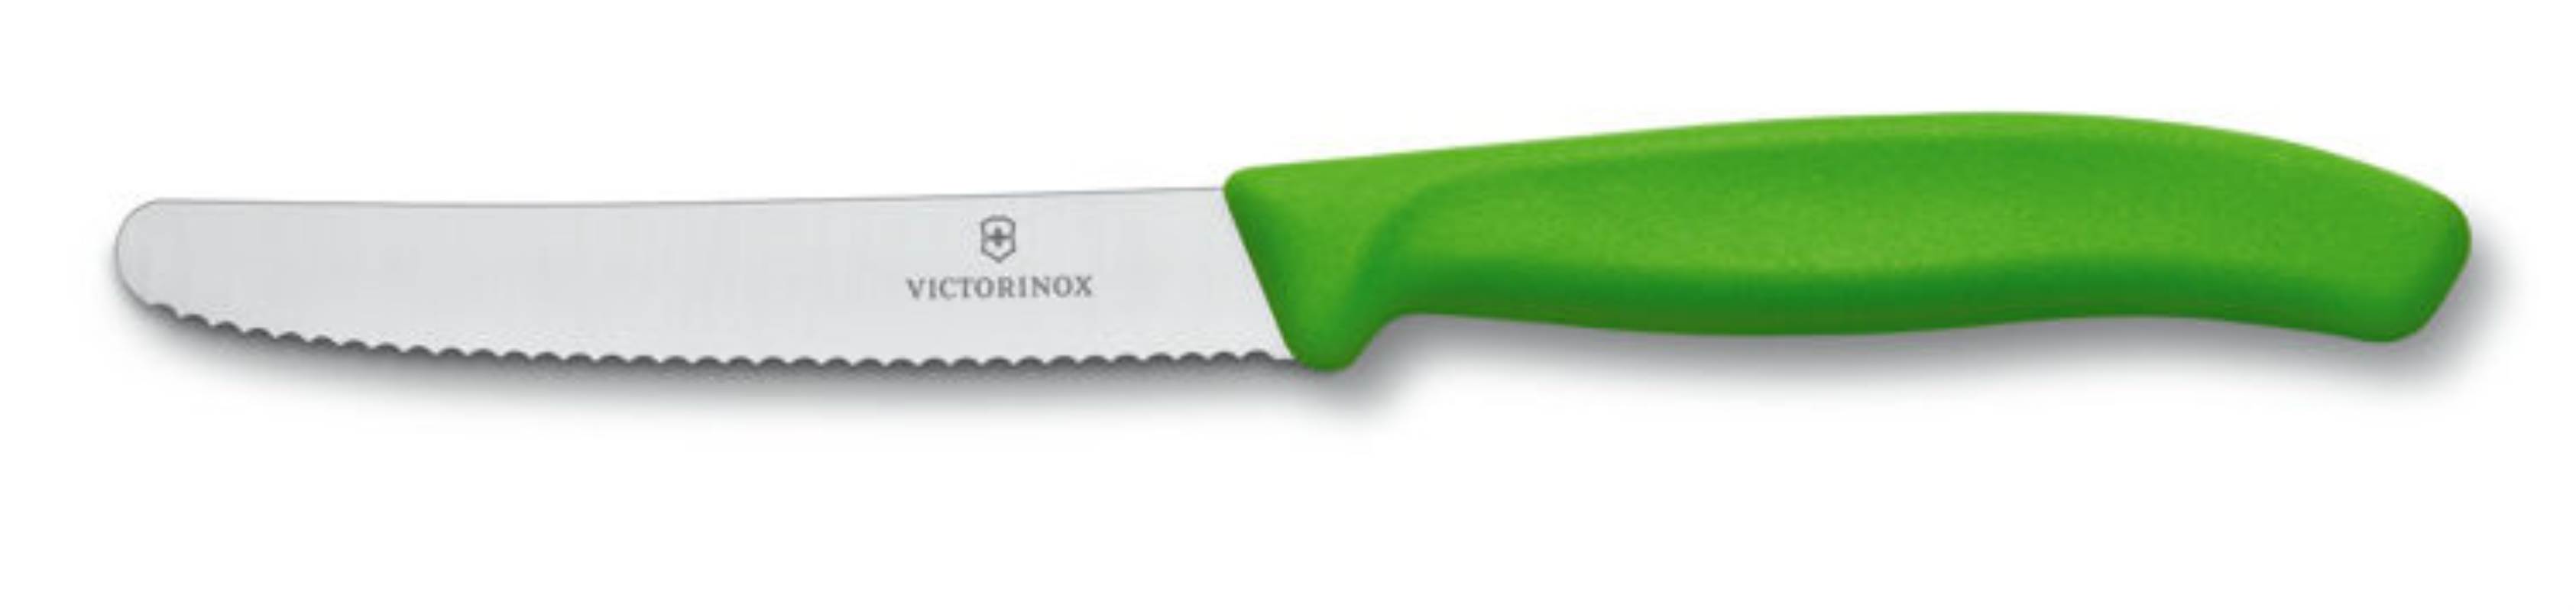 Green Serrated Edge Utility Knife